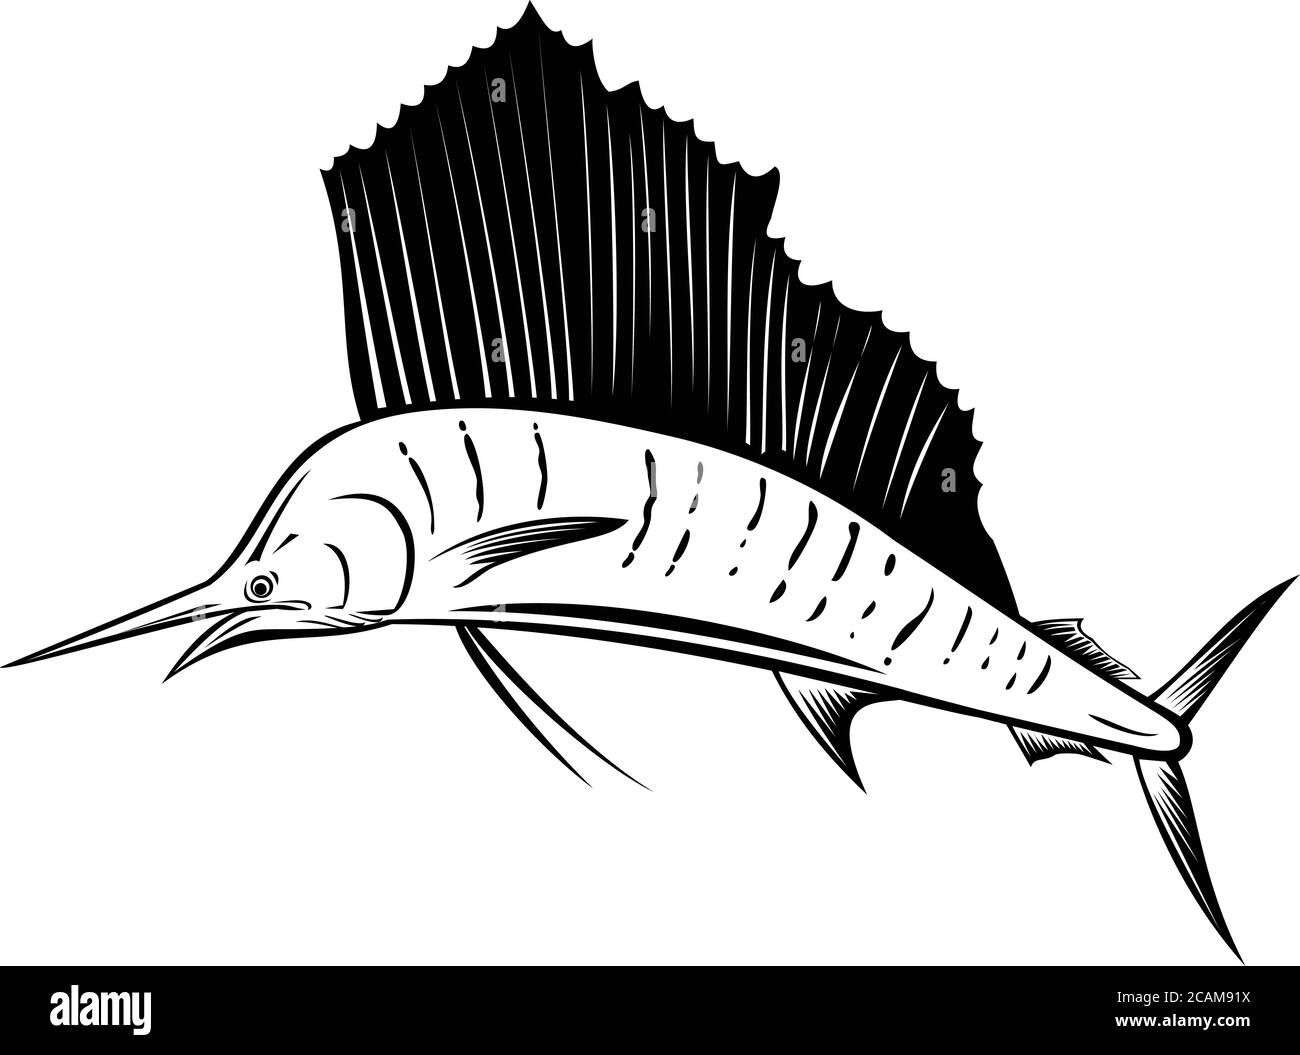 Ilustración de un pez vela indopacífico, un pez del género istiophorus de peces picudos nativos de los océanos Índico y Pacífico, saltando Ilustración del Vector